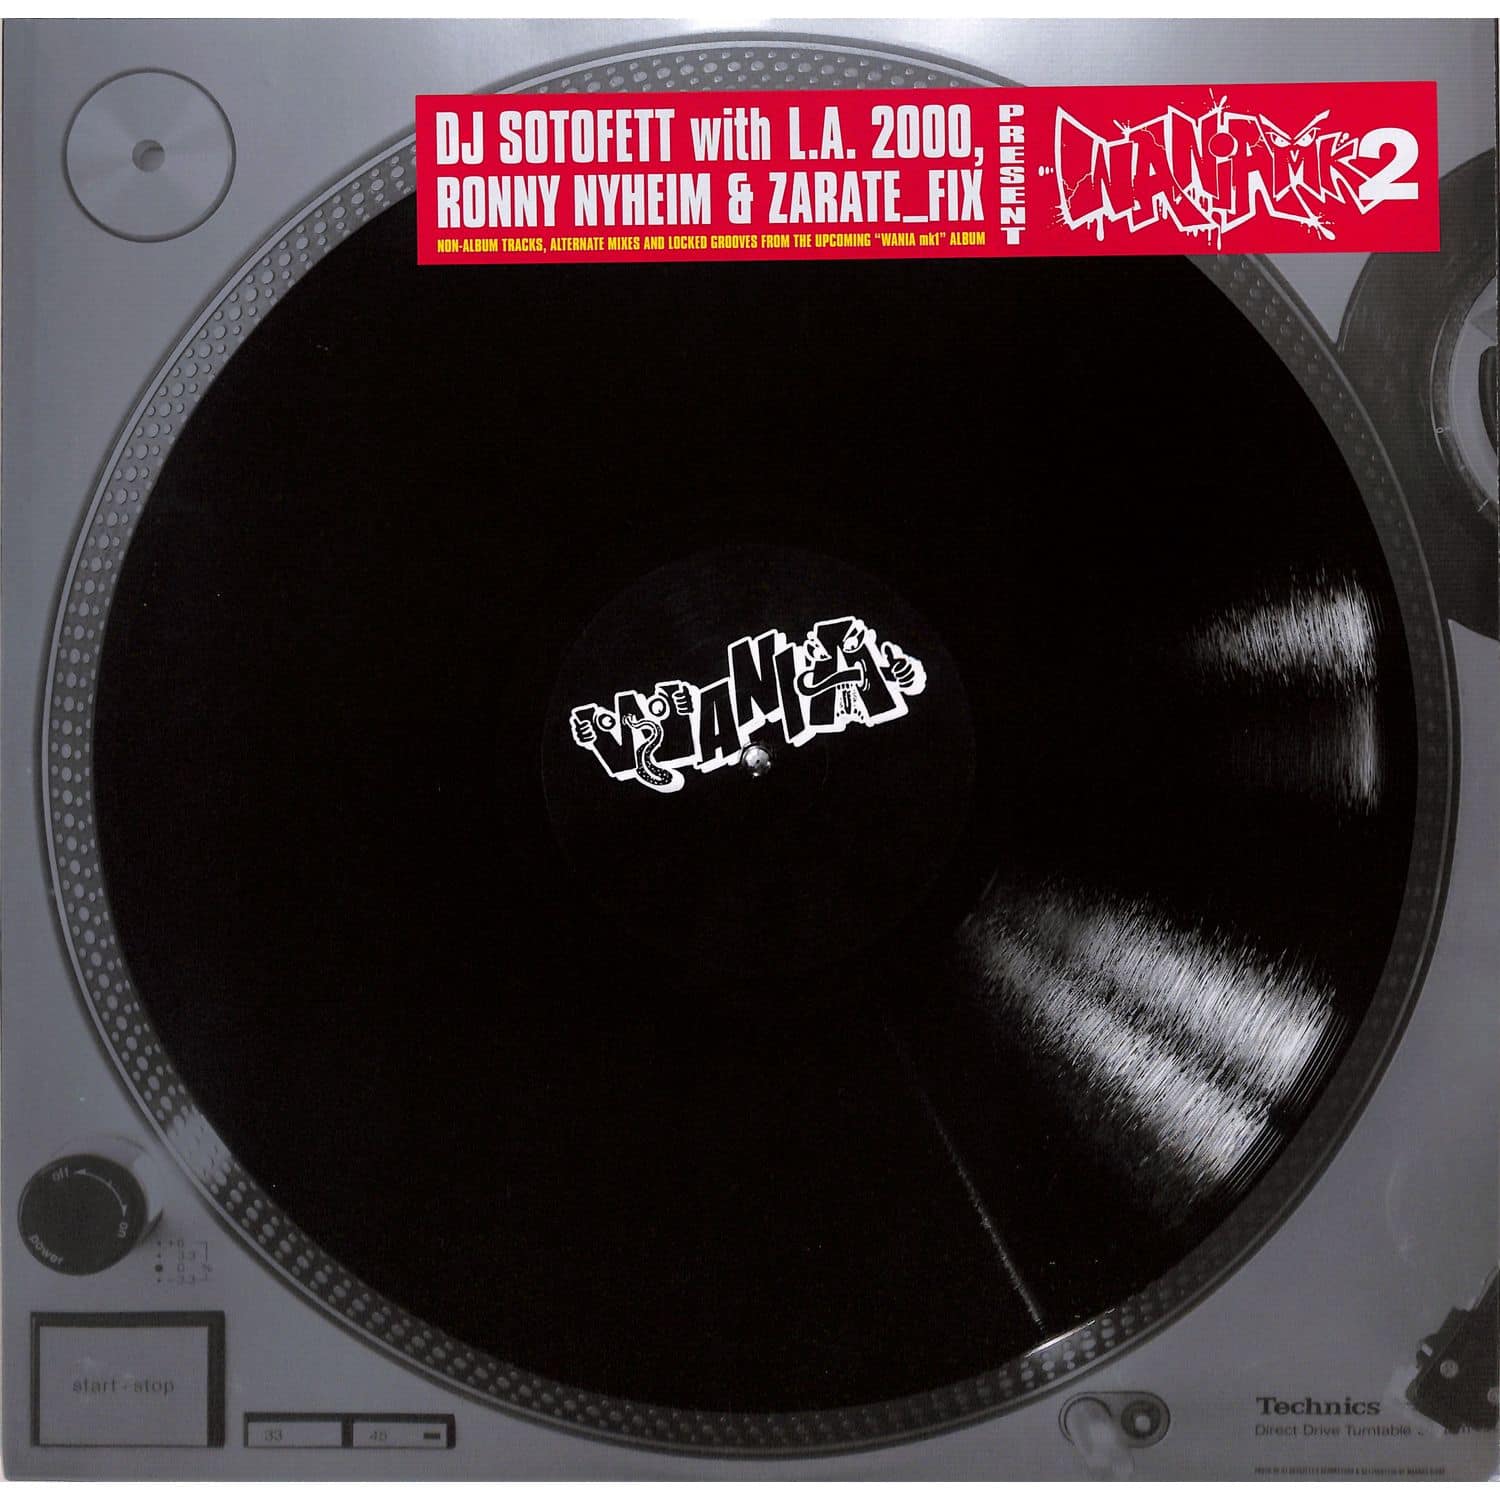 DJ Sotofett with L.A.2000, Ronny Nyheim & Zarate_Fix - WANIA MK2